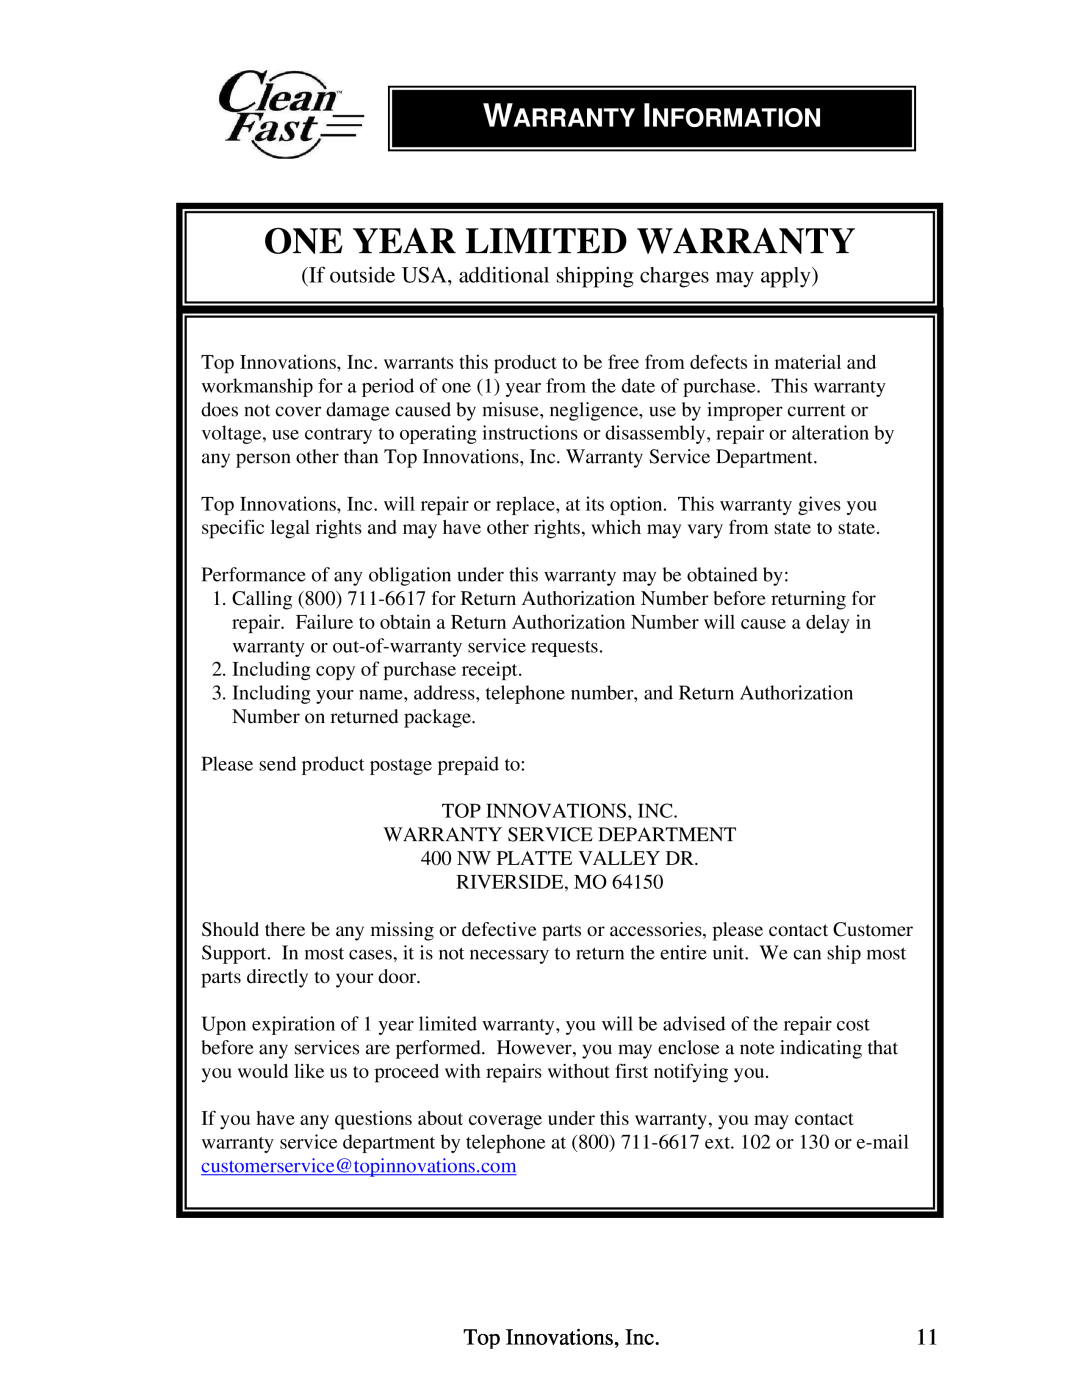 Top Innovations CF-952 warranty One Year Limited Warranty, Warranty Information 